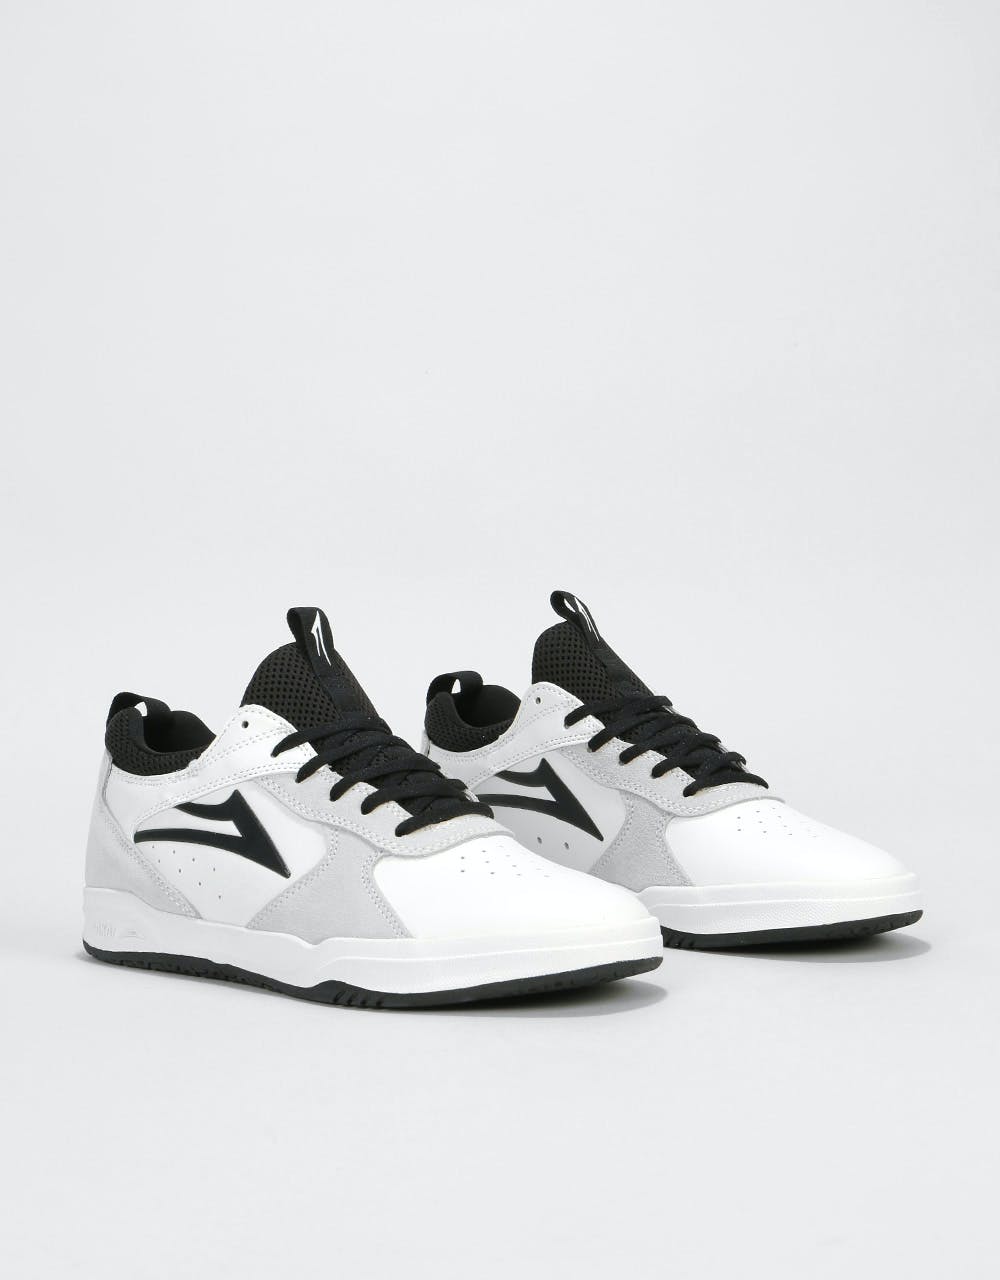 Lakai The Proto Skate Shoes - White/Black Suede